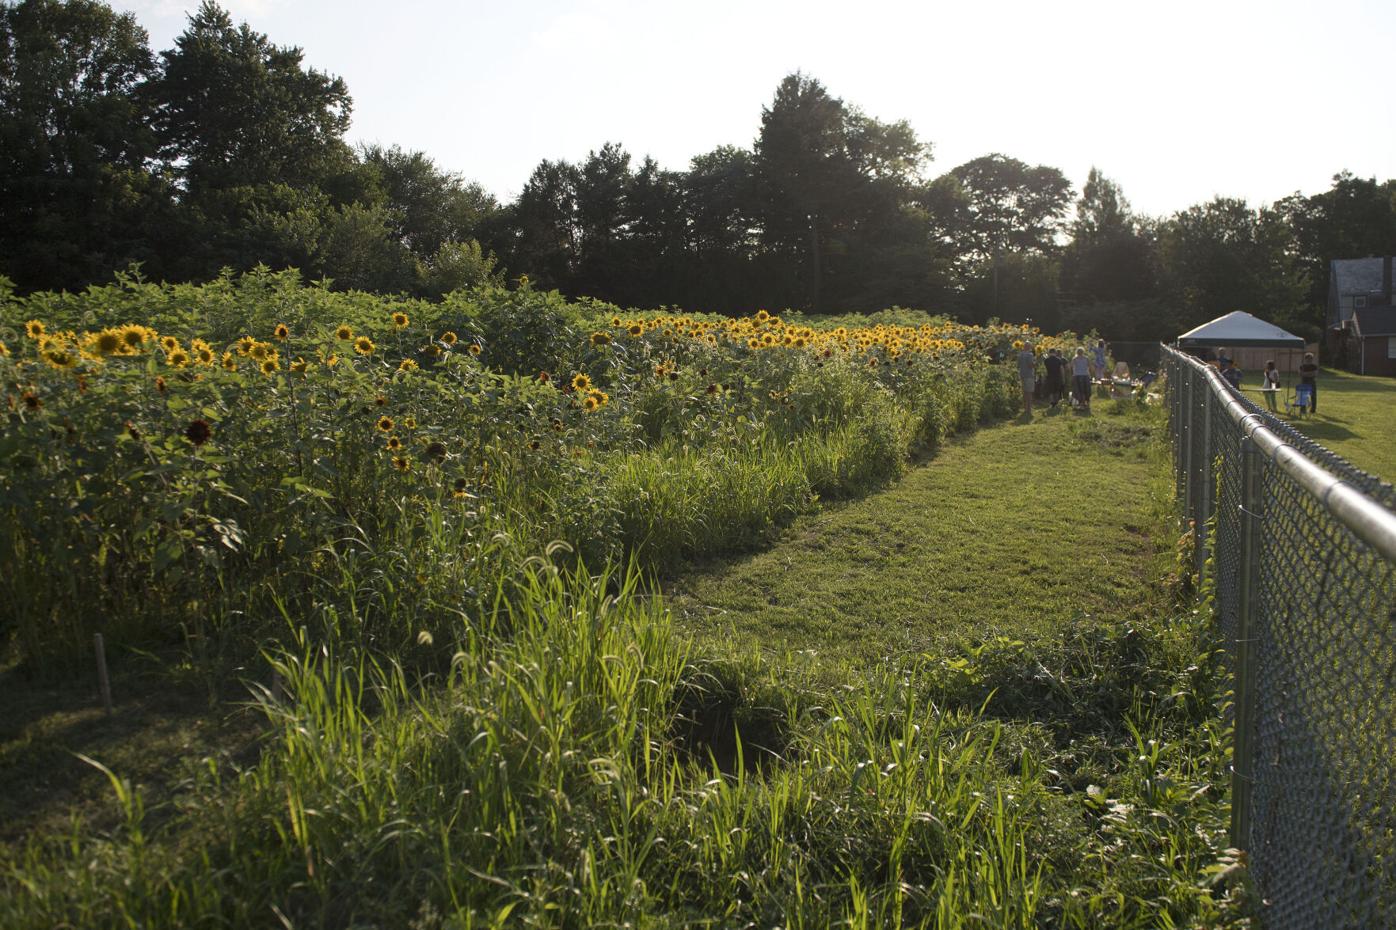 Wheatland Sunflower Field